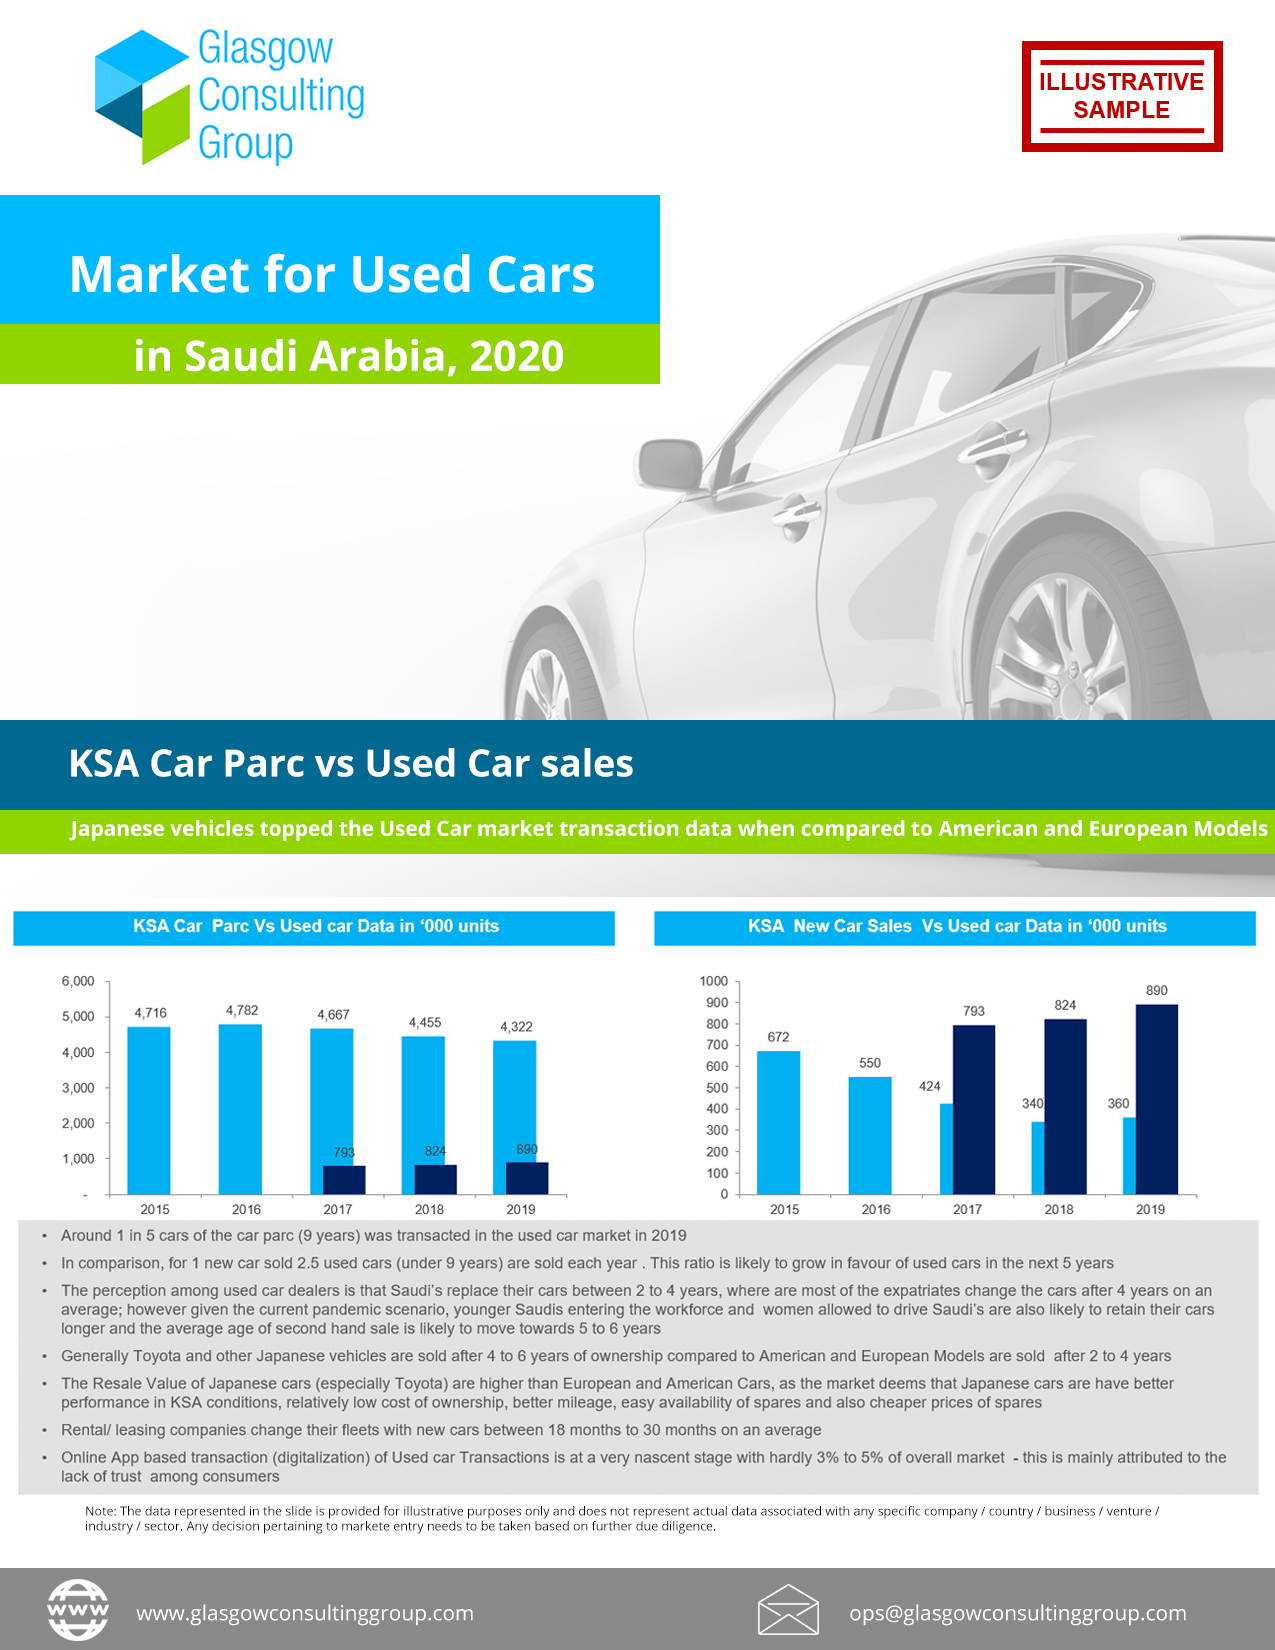 Market for Used Cars in Saudi Arabia, 2020